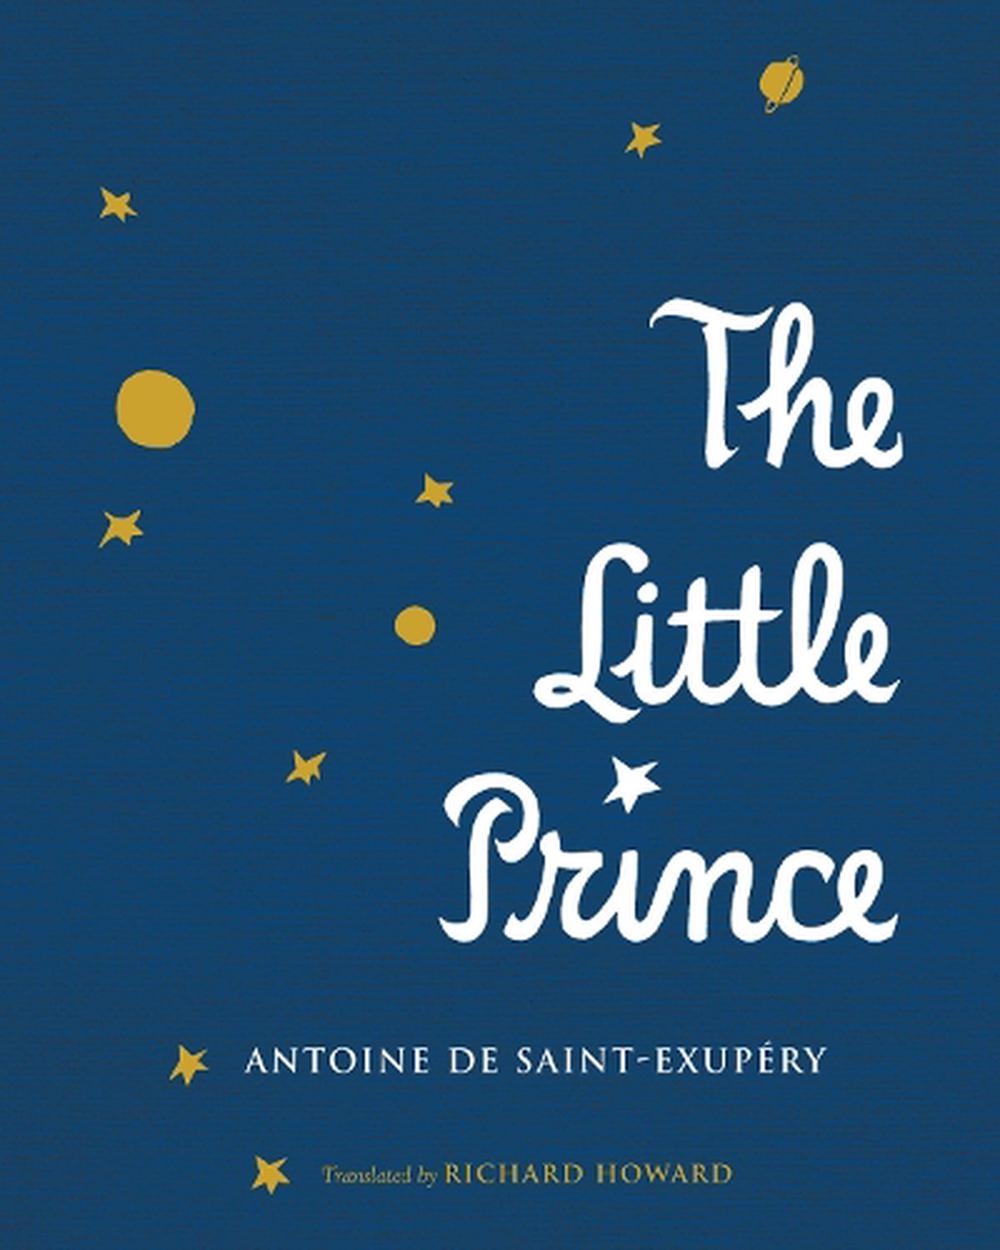 the little princess book antoine de saint exupery